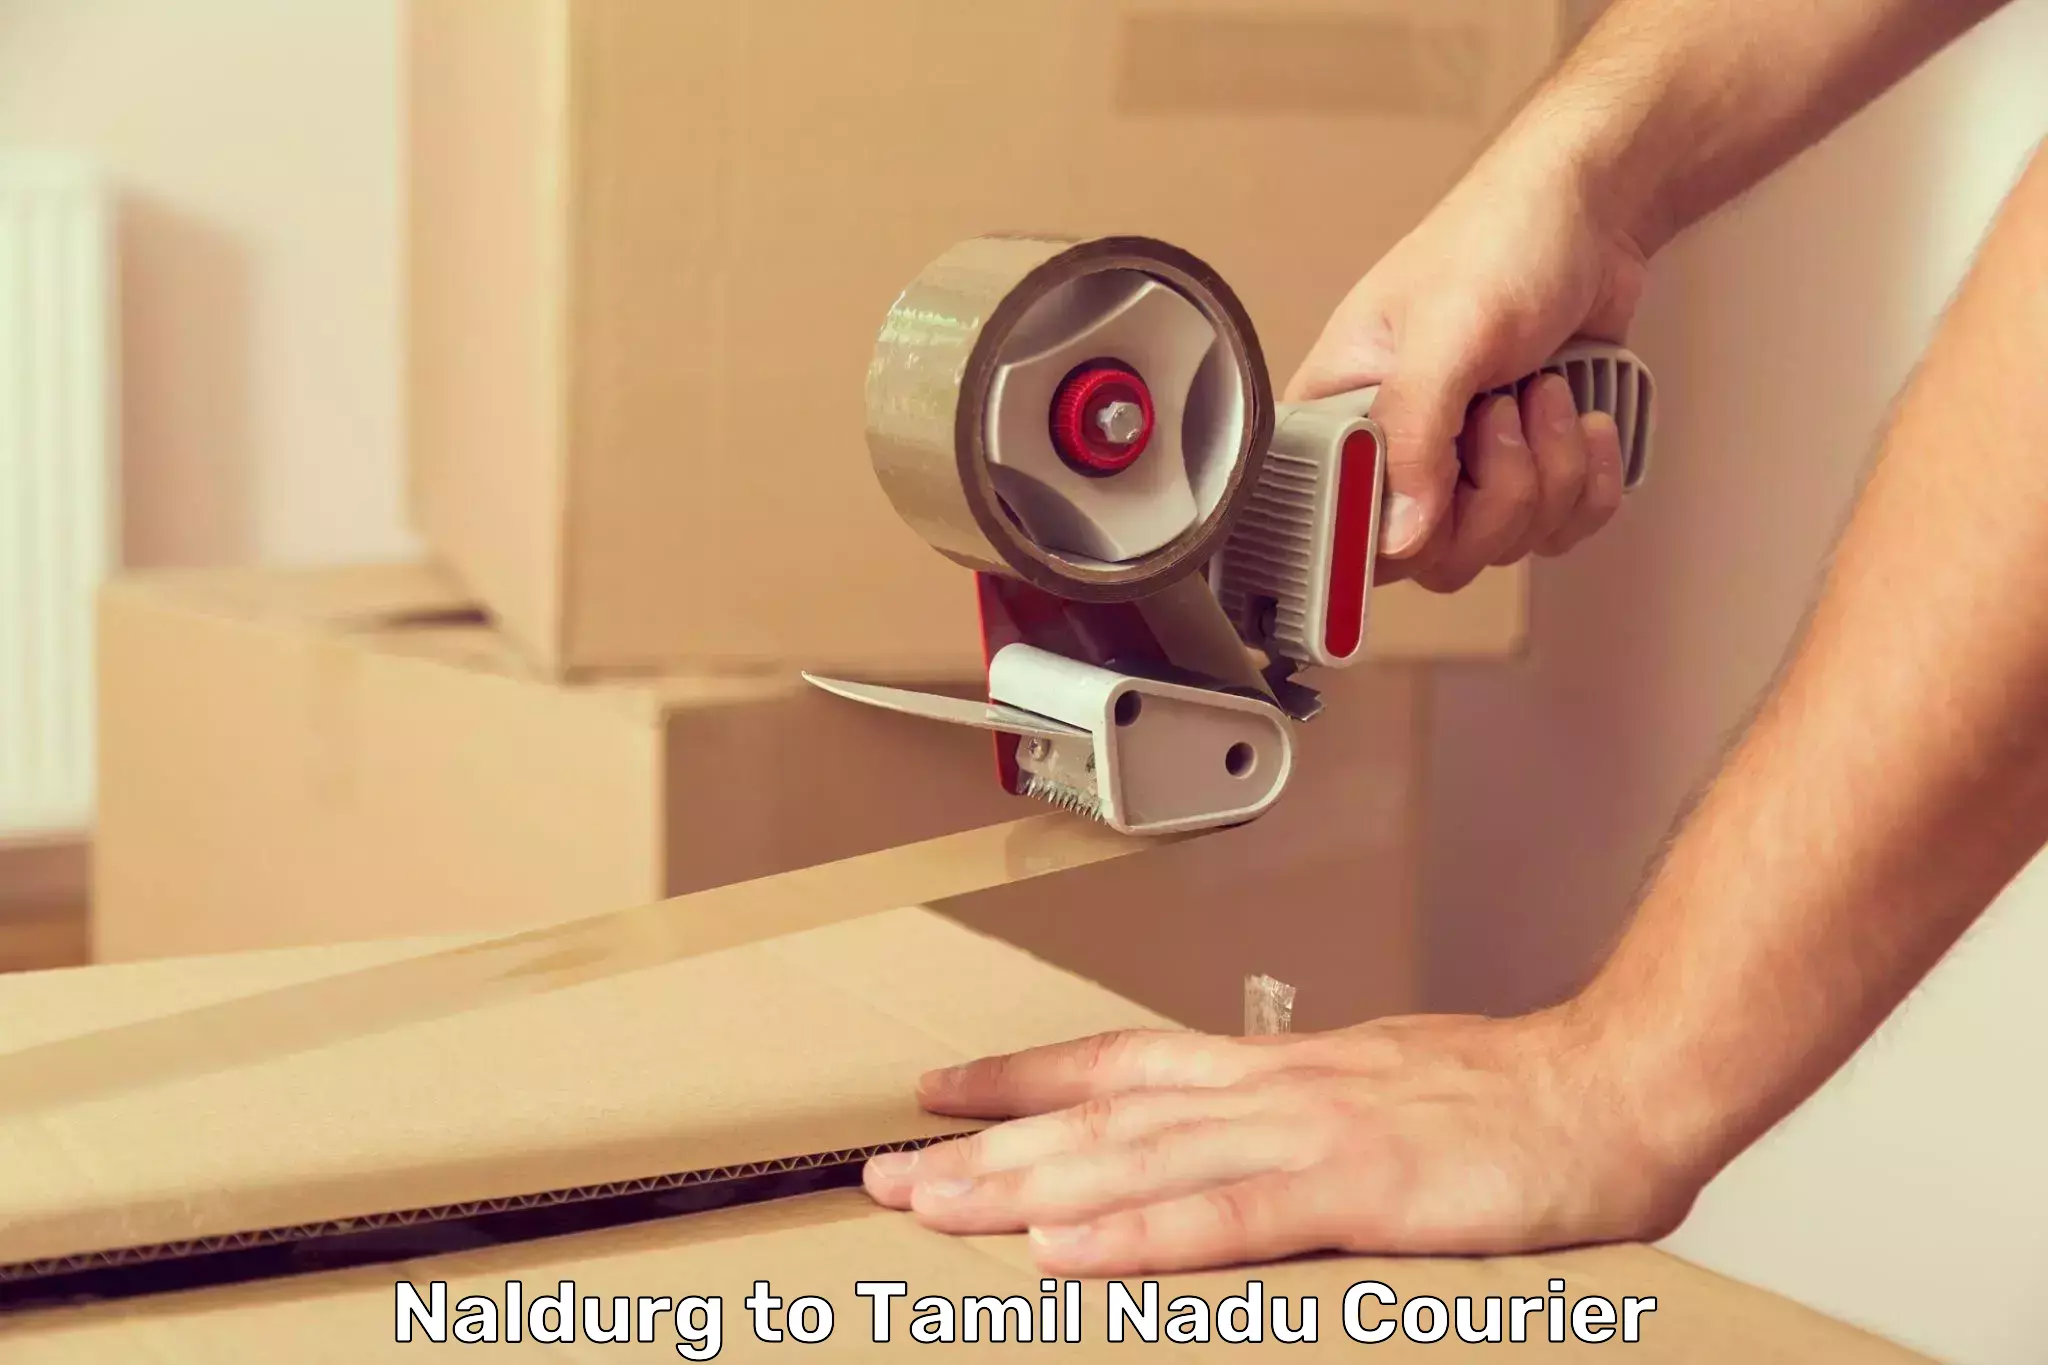 Advanced shipping services Naldurg to Madurai